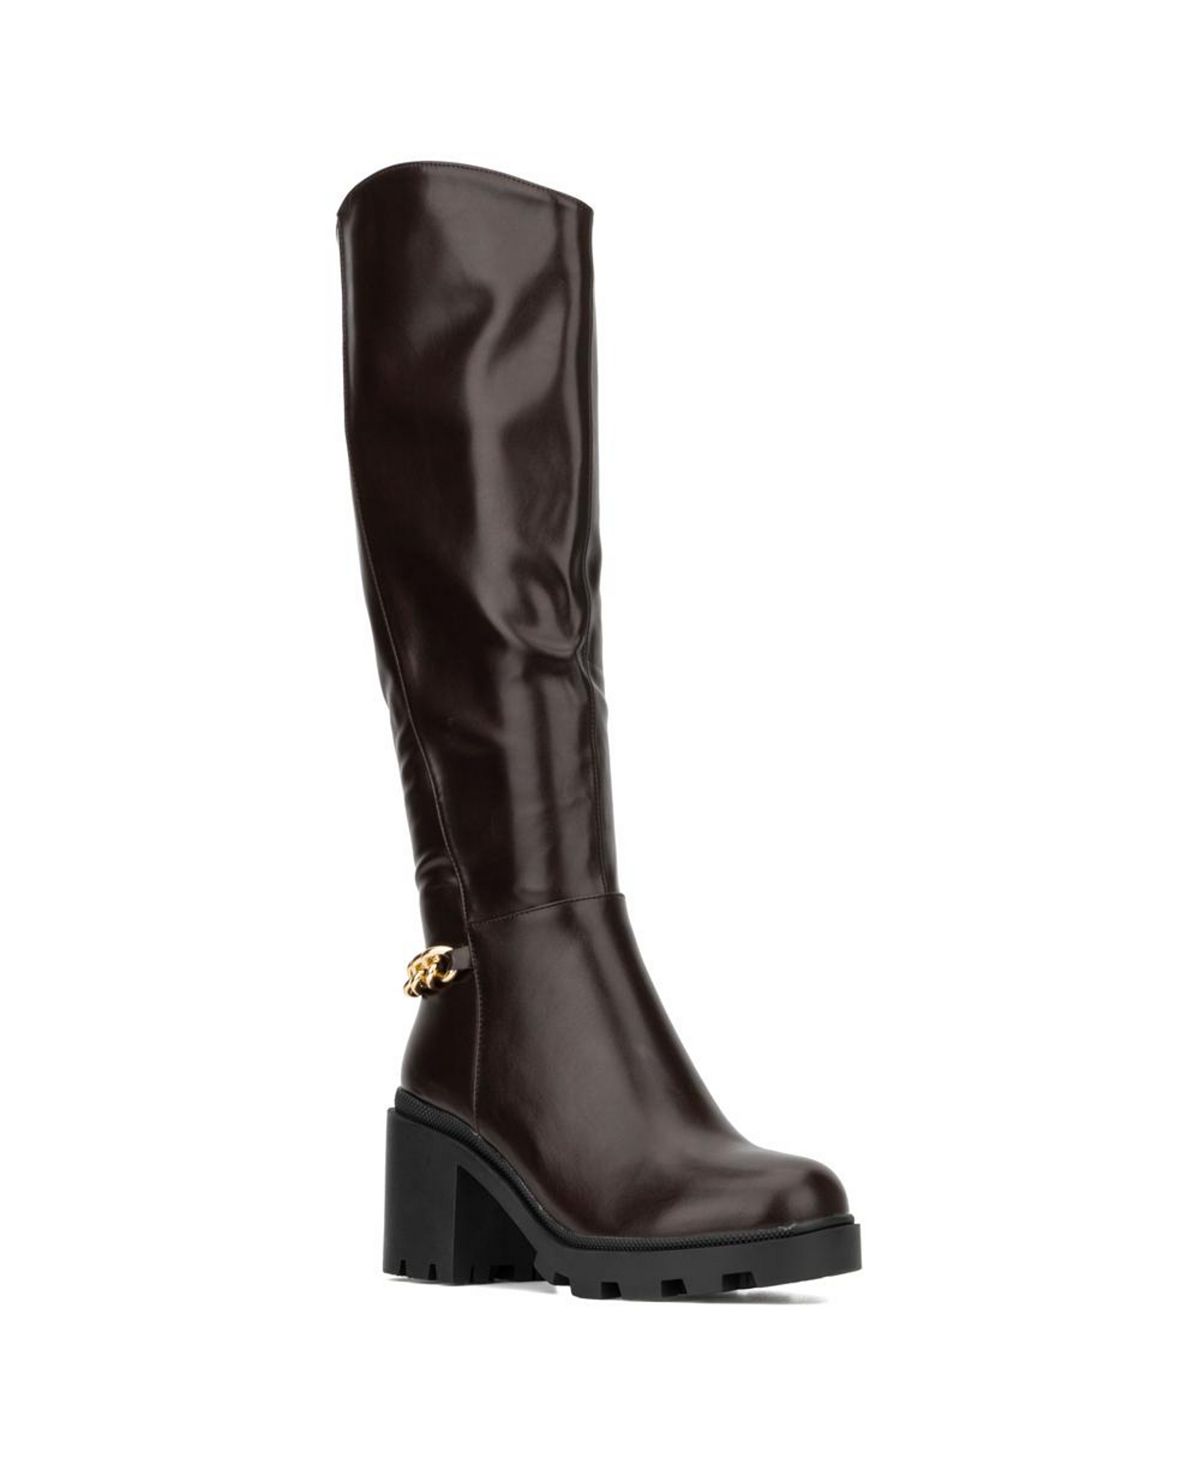 Женские высокие ботинки Athena Torgeis, коричневый цена и фото